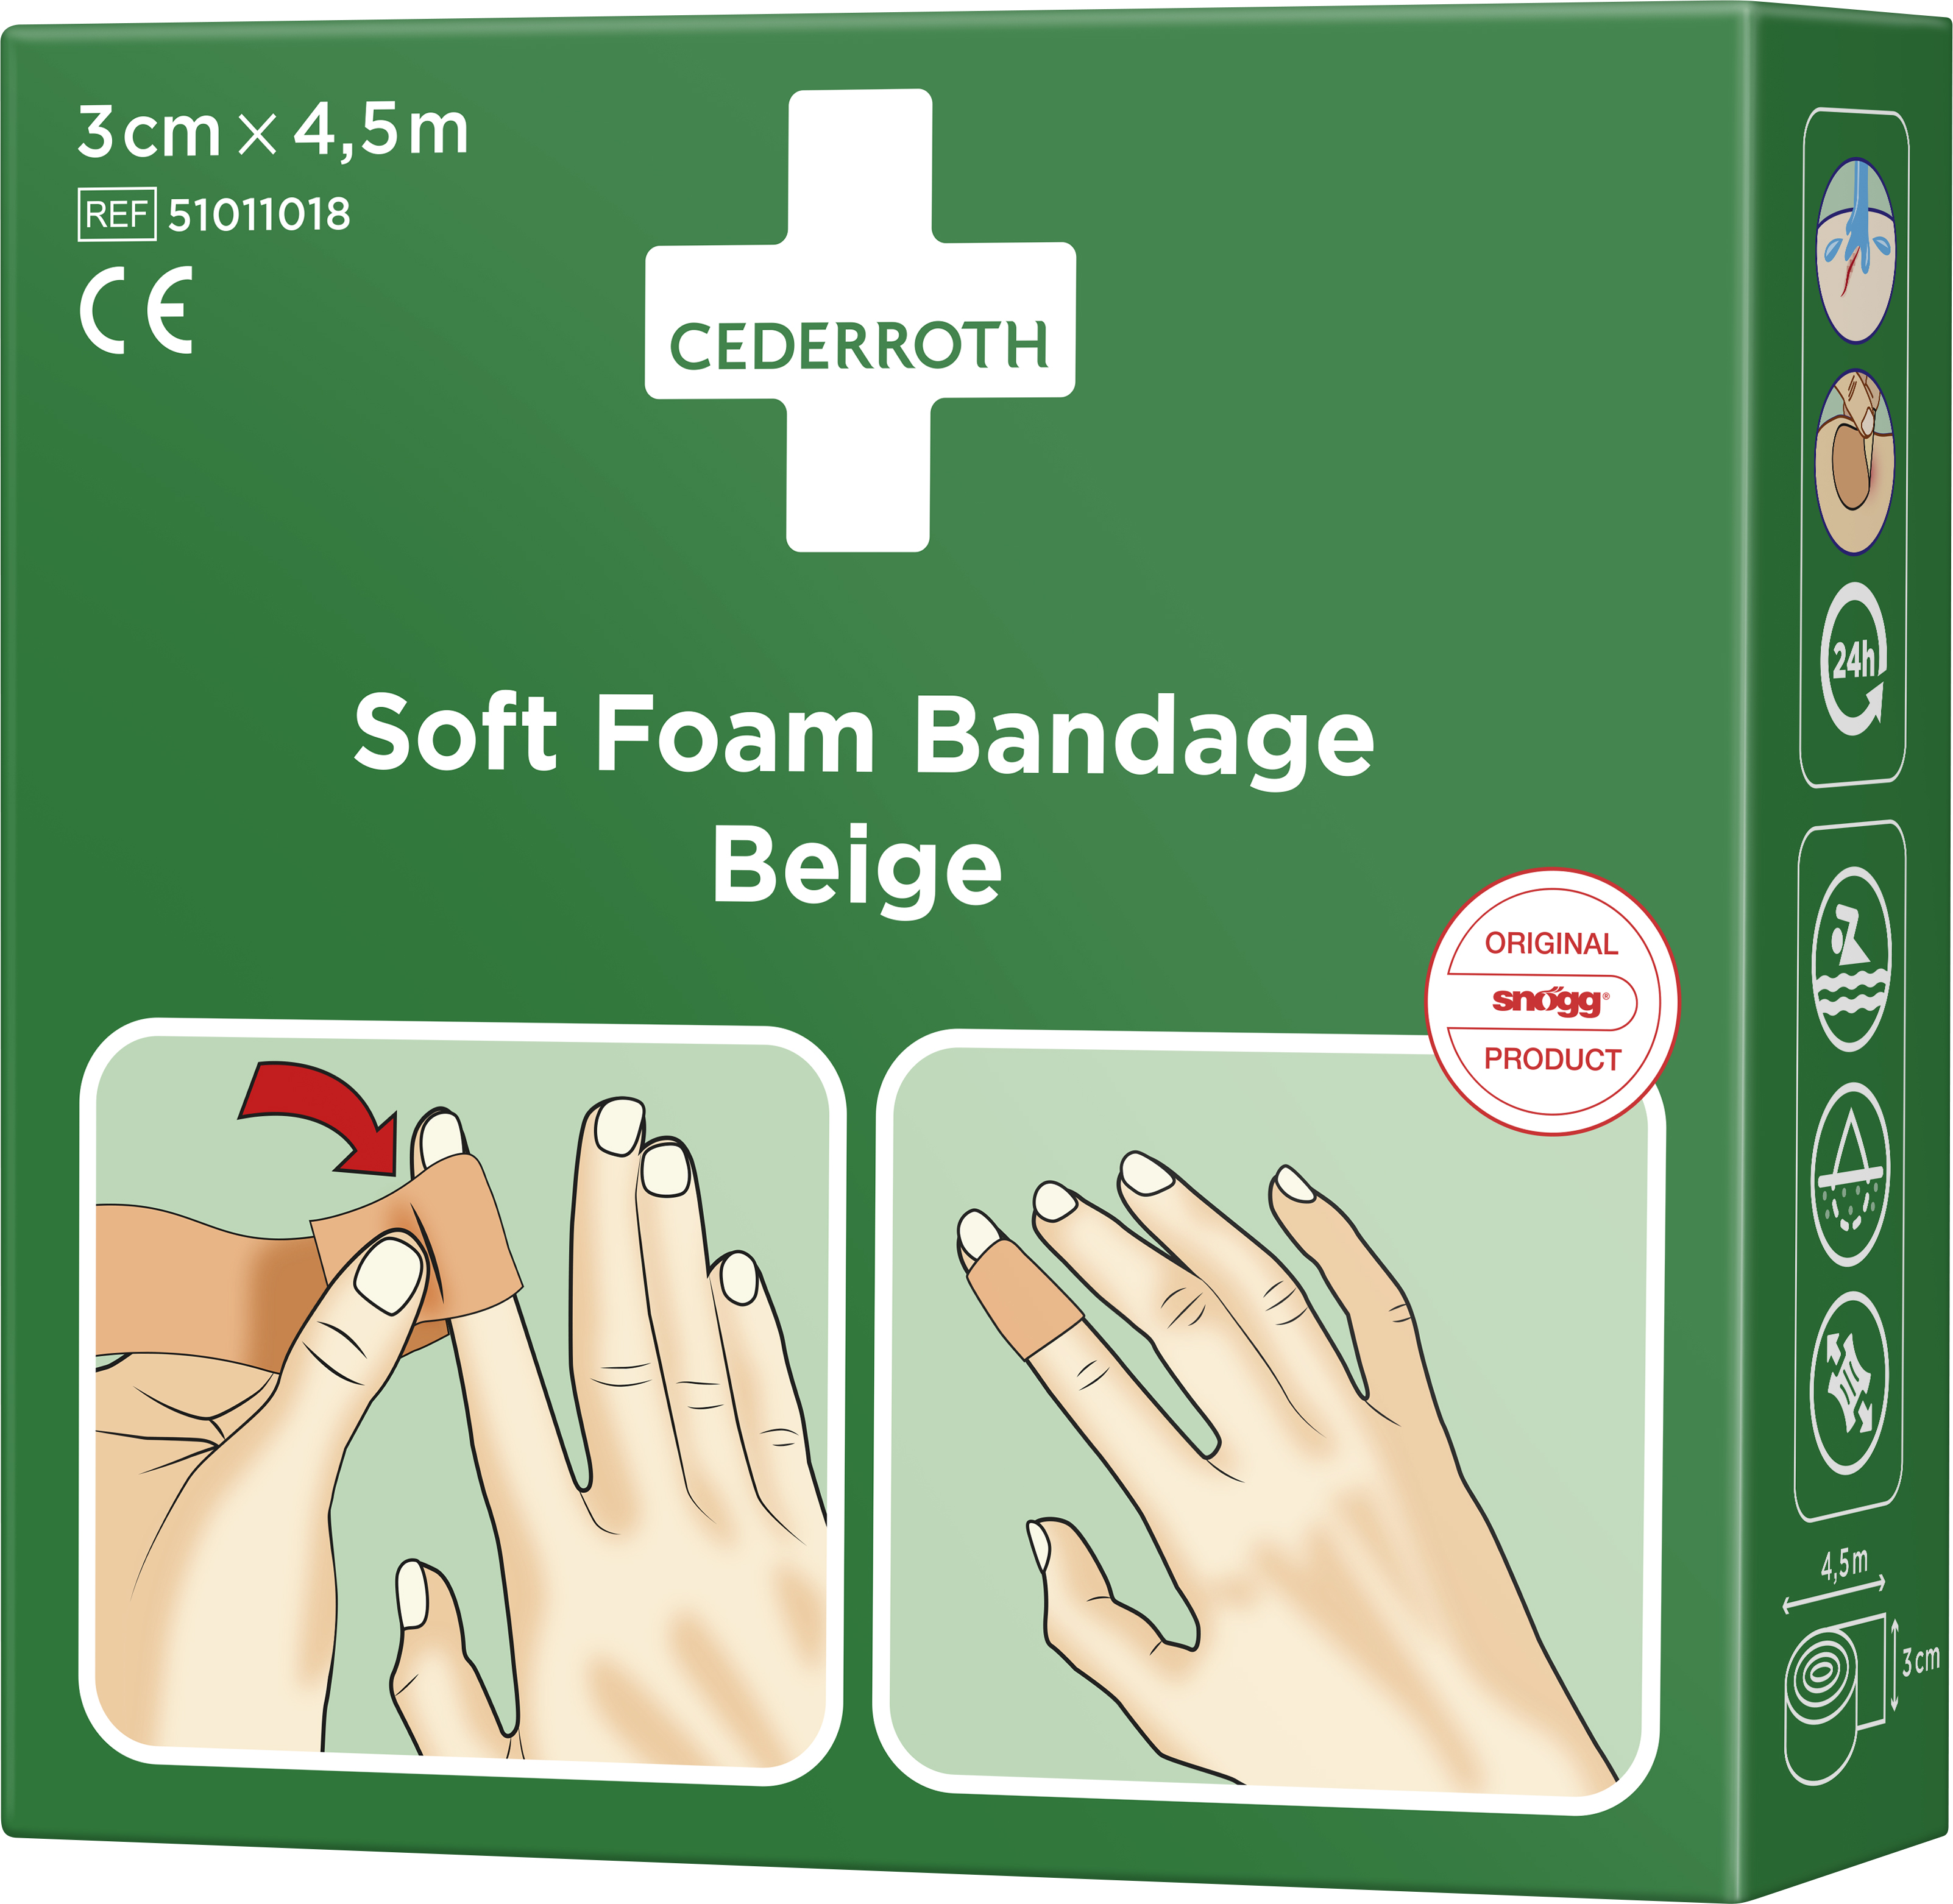 Cederroth Soft Foam Bandage Beige 3 cm x 4,5 m